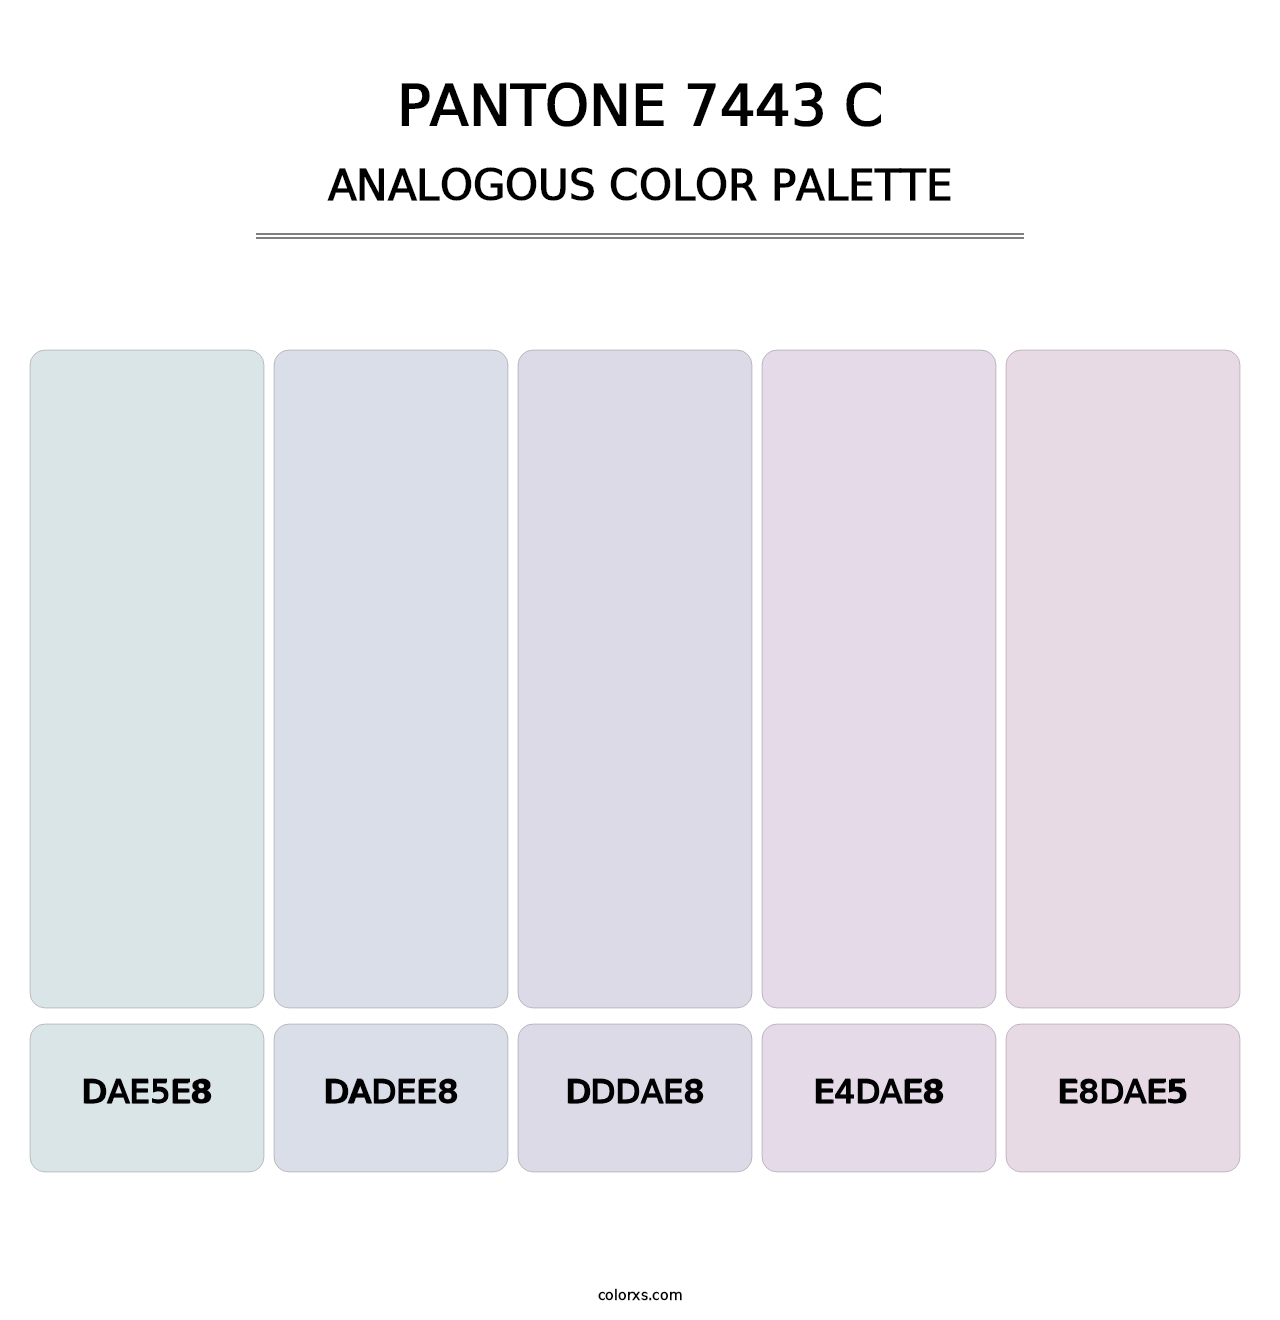 PANTONE 7443 C - Analogous Color Palette